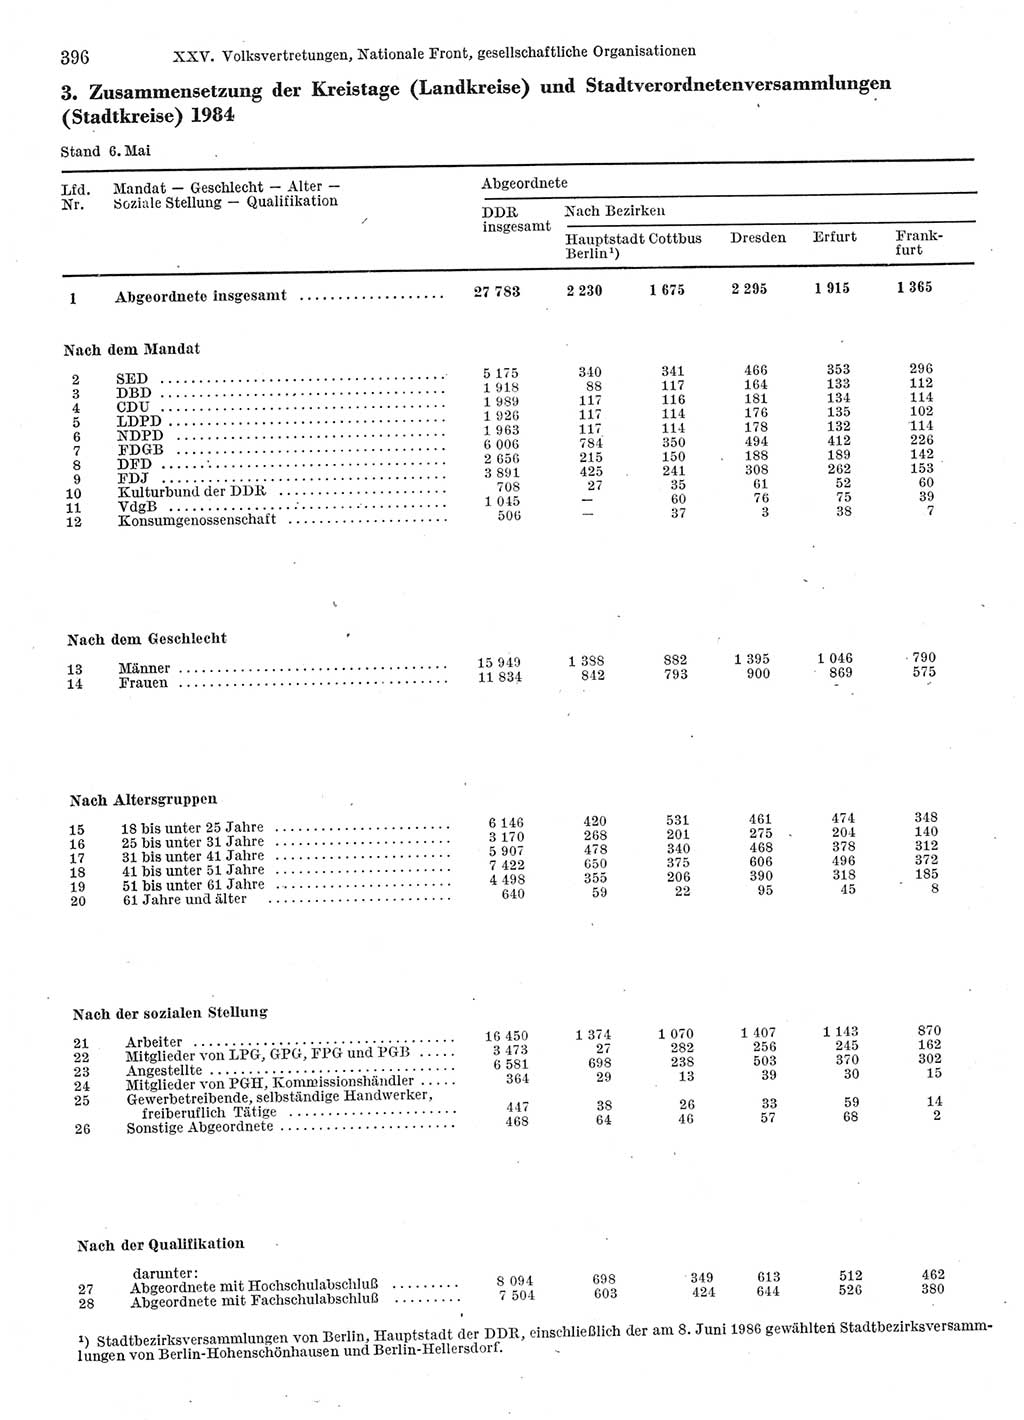 Statistisches Jahrbuch der Deutschen Demokratischen Republik (DDR) 1986, Seite 396 (Stat. Jb. DDR 1986, S. 396)